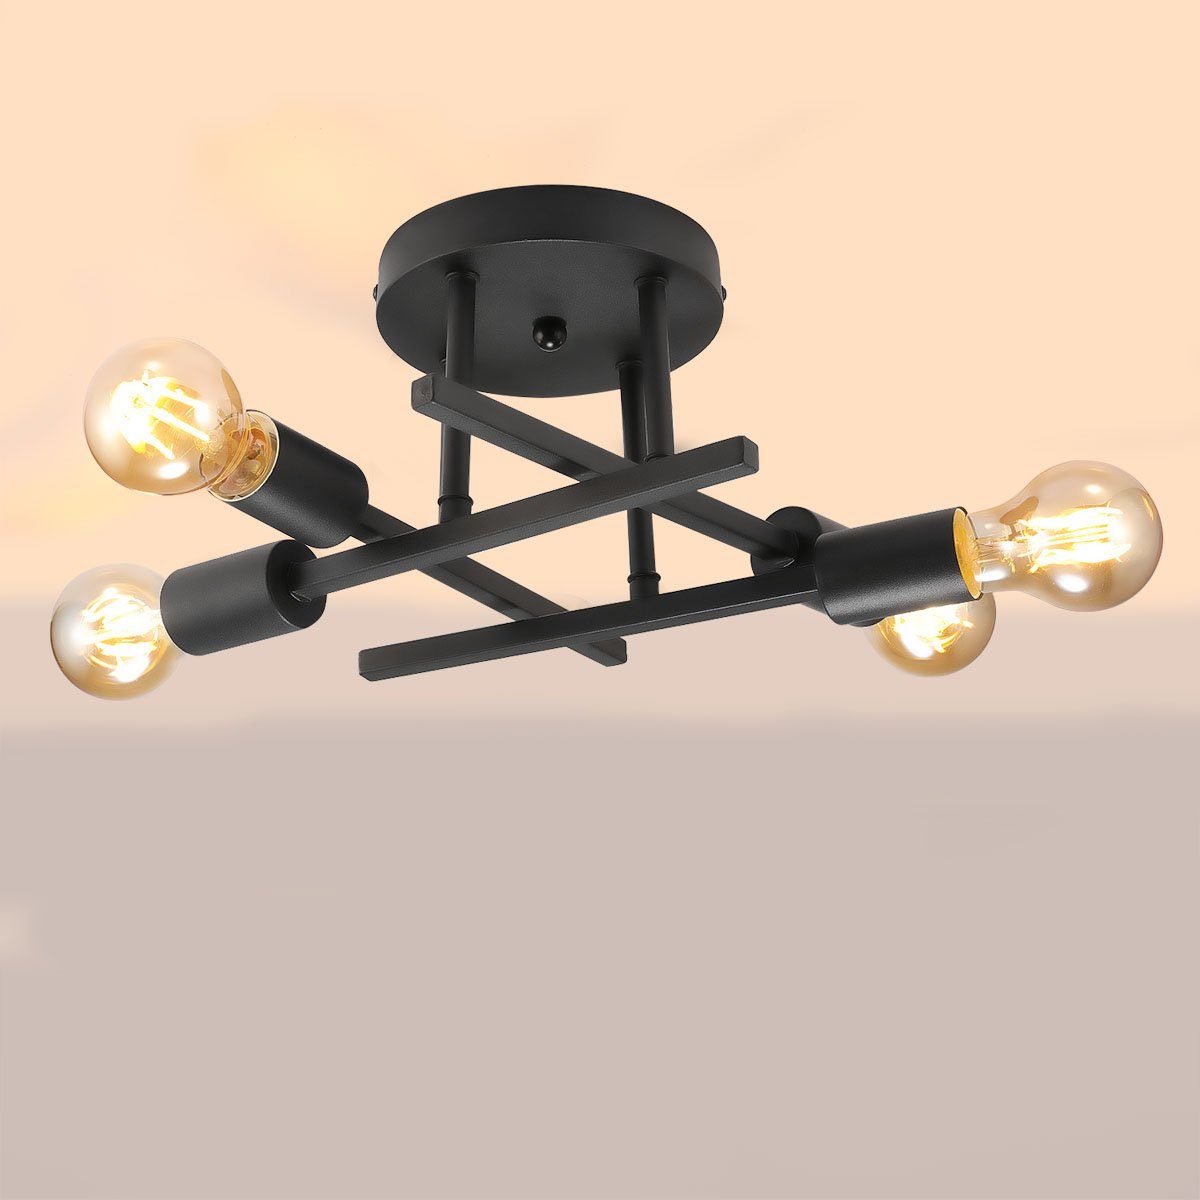 LETGOSPT Deckenleuchte Deckenlampe aus Eisen, Satelliten Design E27-Sockel 4 Lampenarm mit 4 Glühbirne